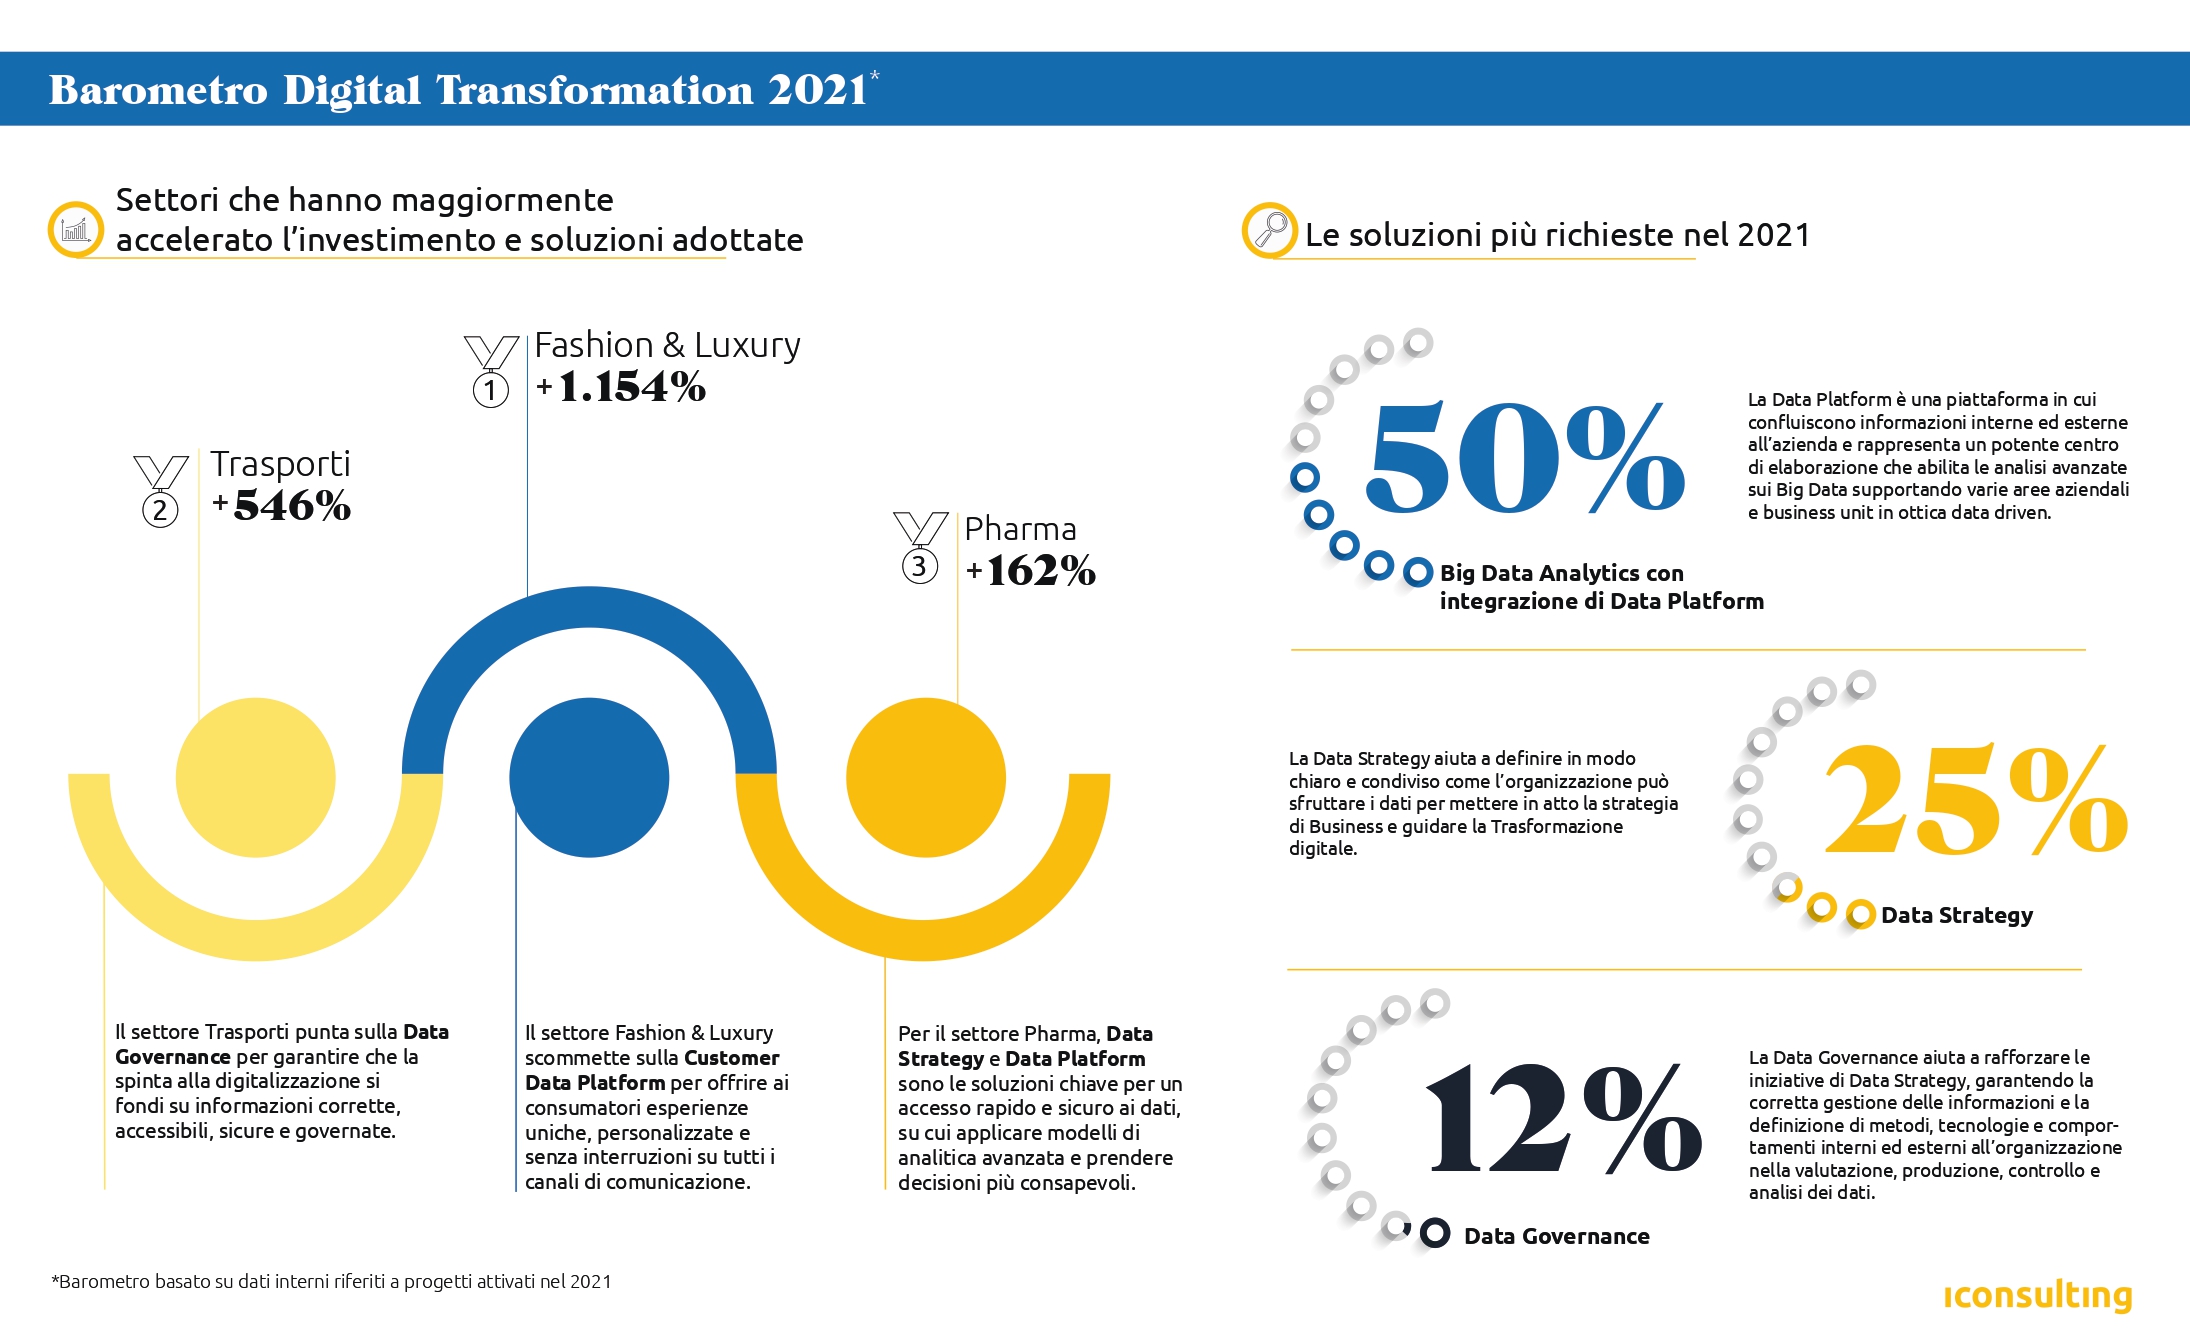 iInfographic of the Digital Transformation 2021 loftvog búin til af Iconsulting